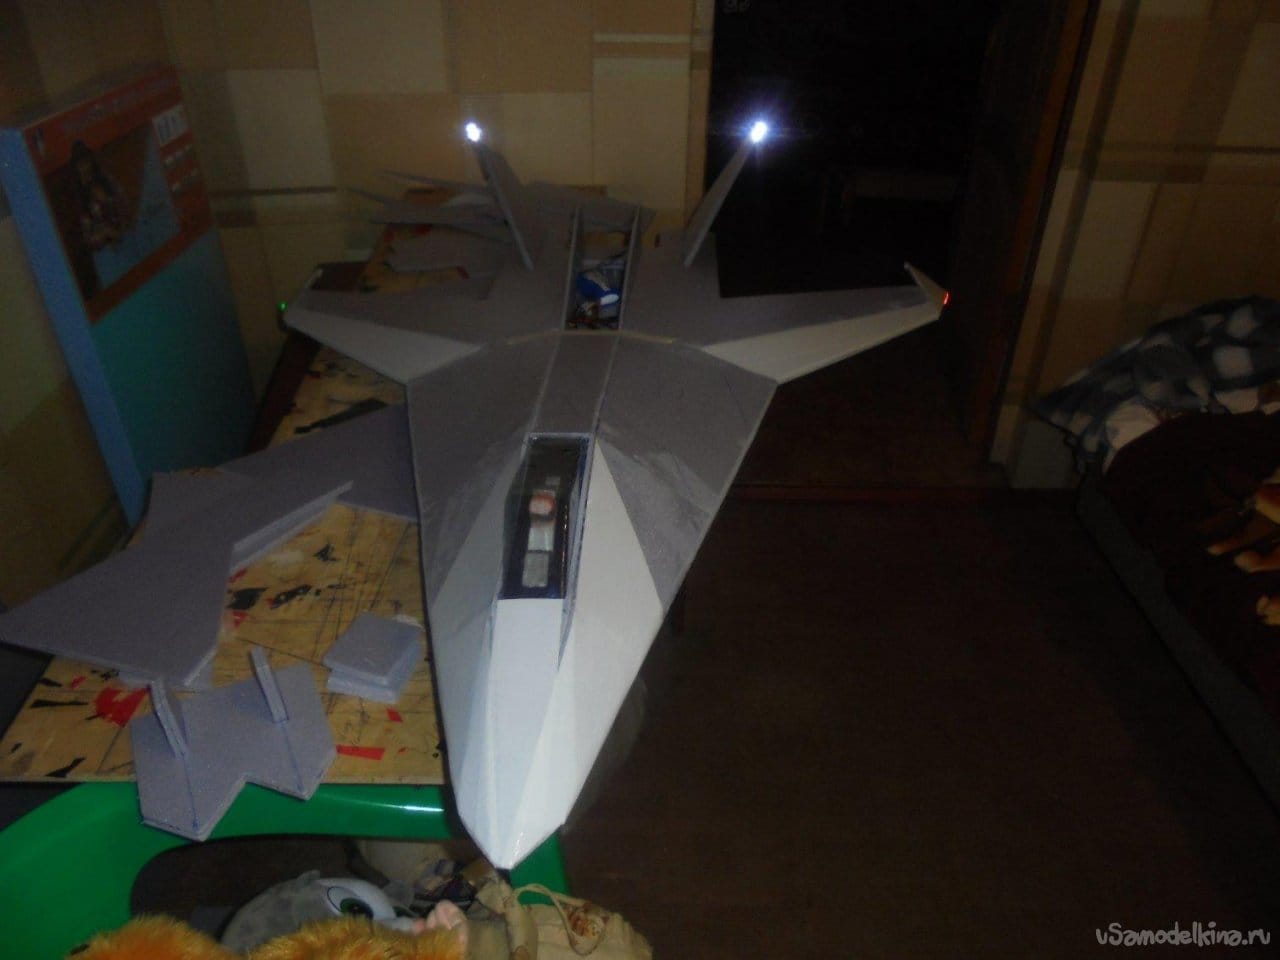 Авиамодель АлиС-631-5 «Эхо»